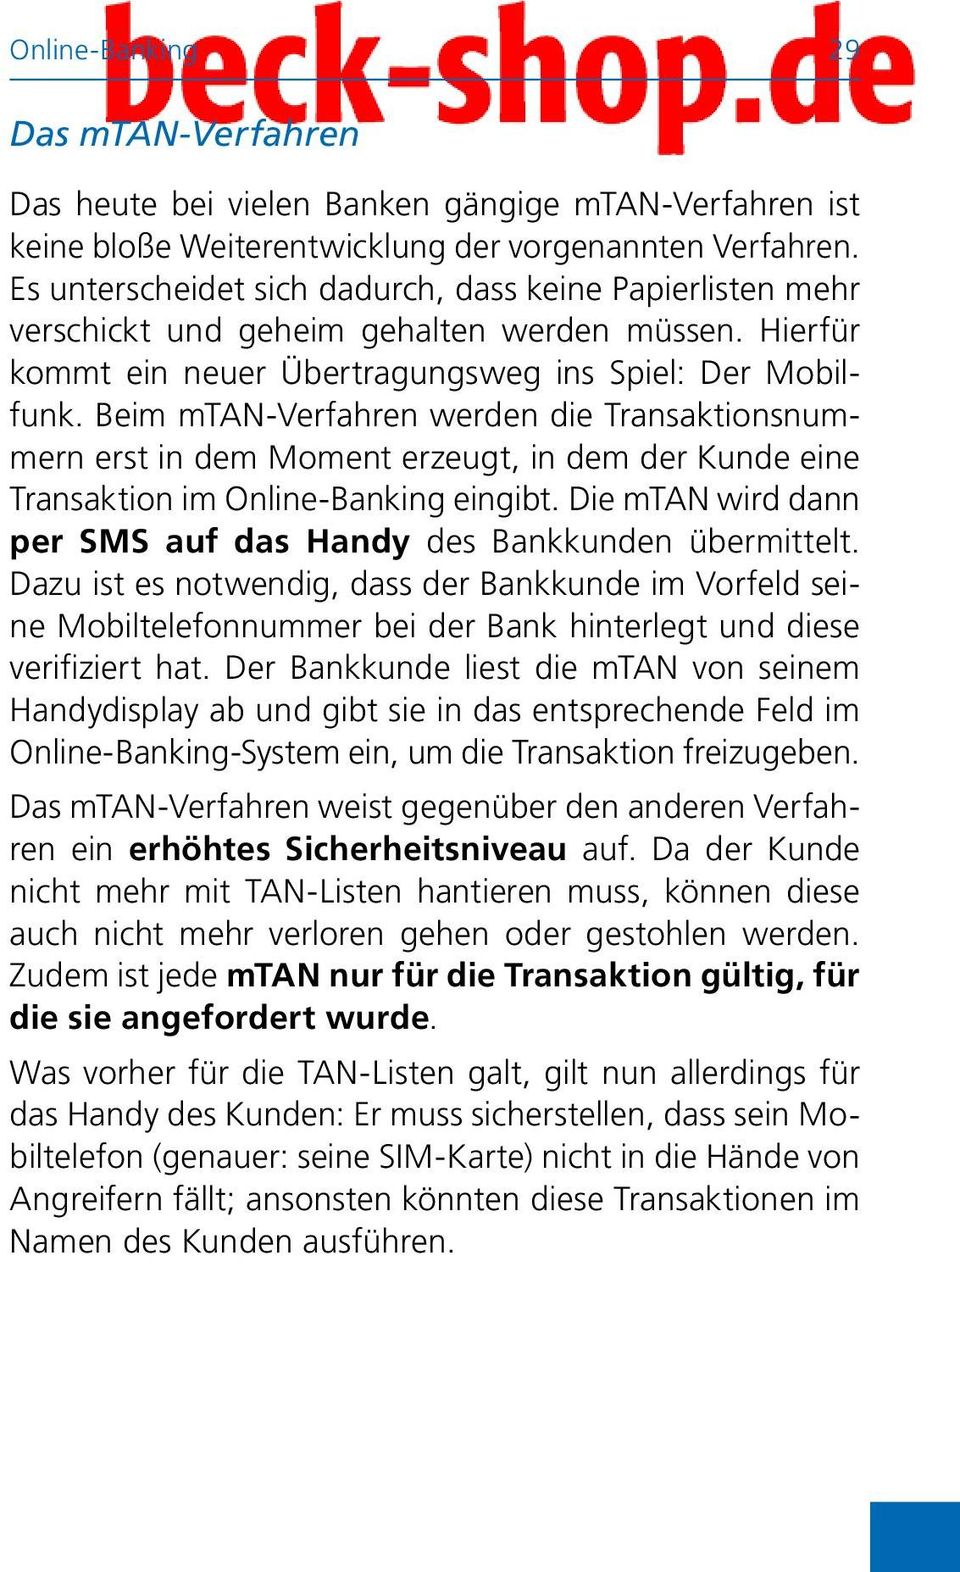 Beim mtan-verfahren werden die Transaktionsnummern erst in dem Moment erzeugt, in dem der Kunde eine Transaktion im Online-Banking eingibt.